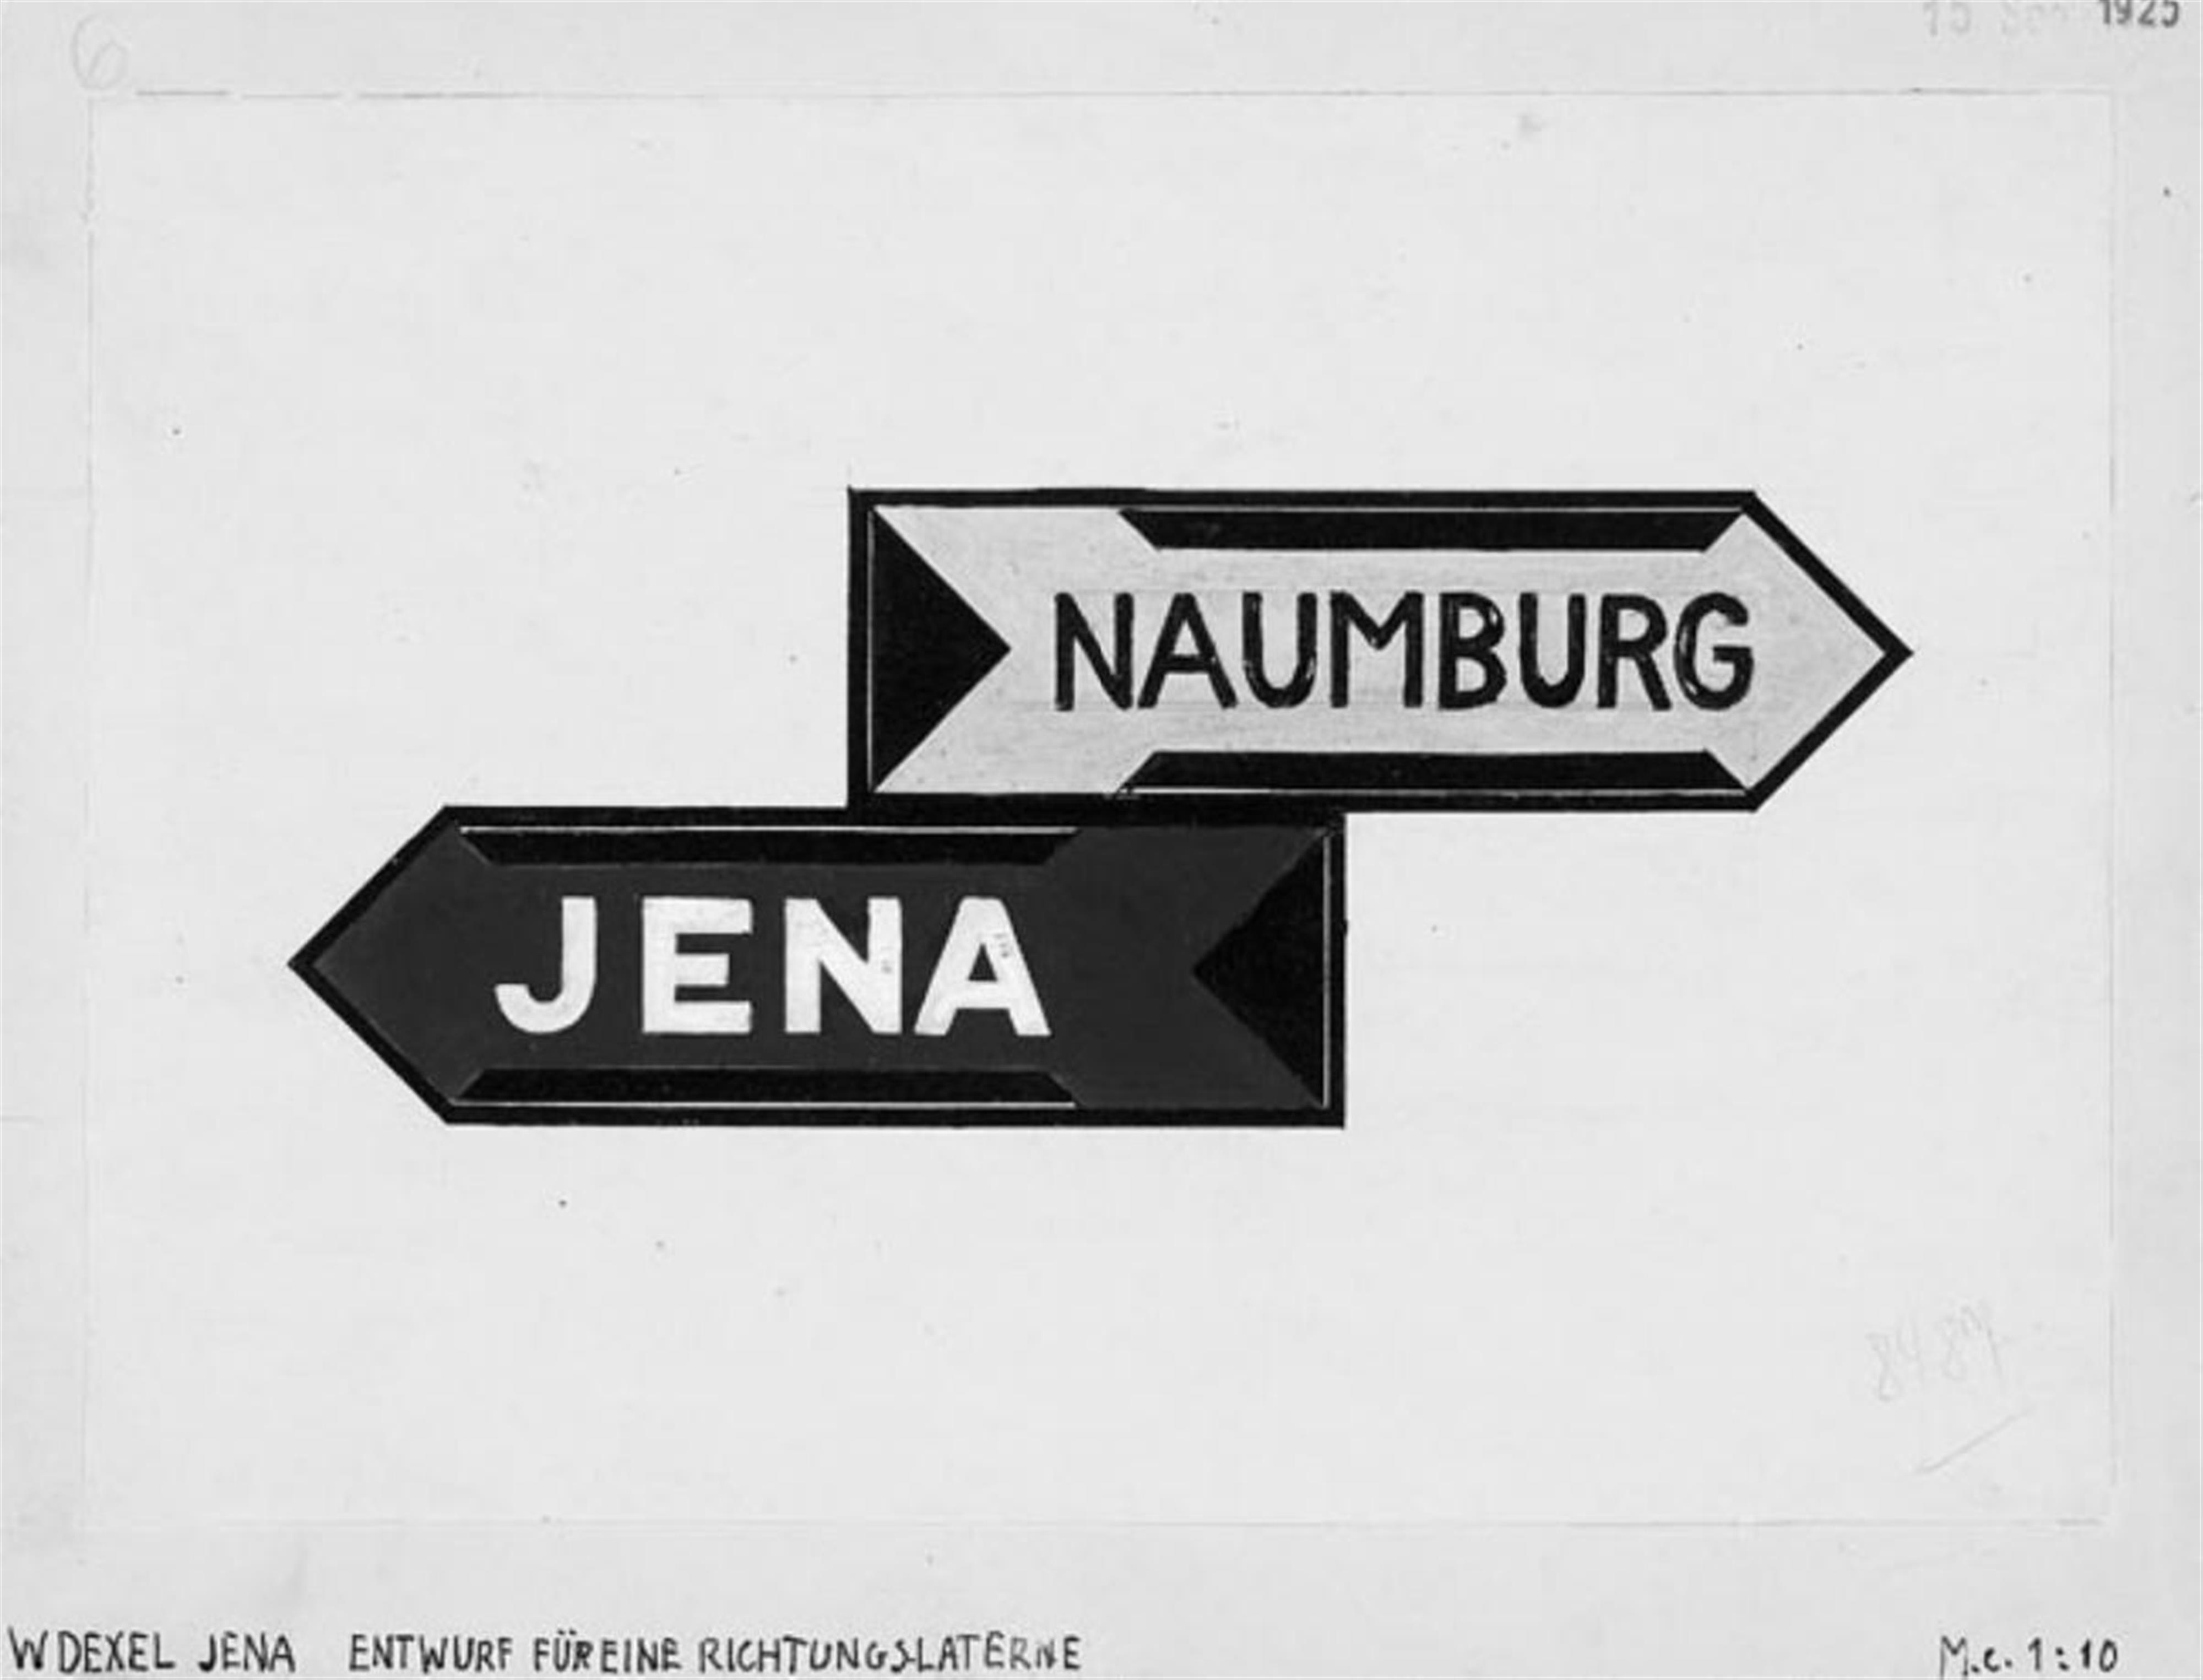 Walter Dexel - Entwurf für eine Richtungslaterne Naumburg - Jena - image-1